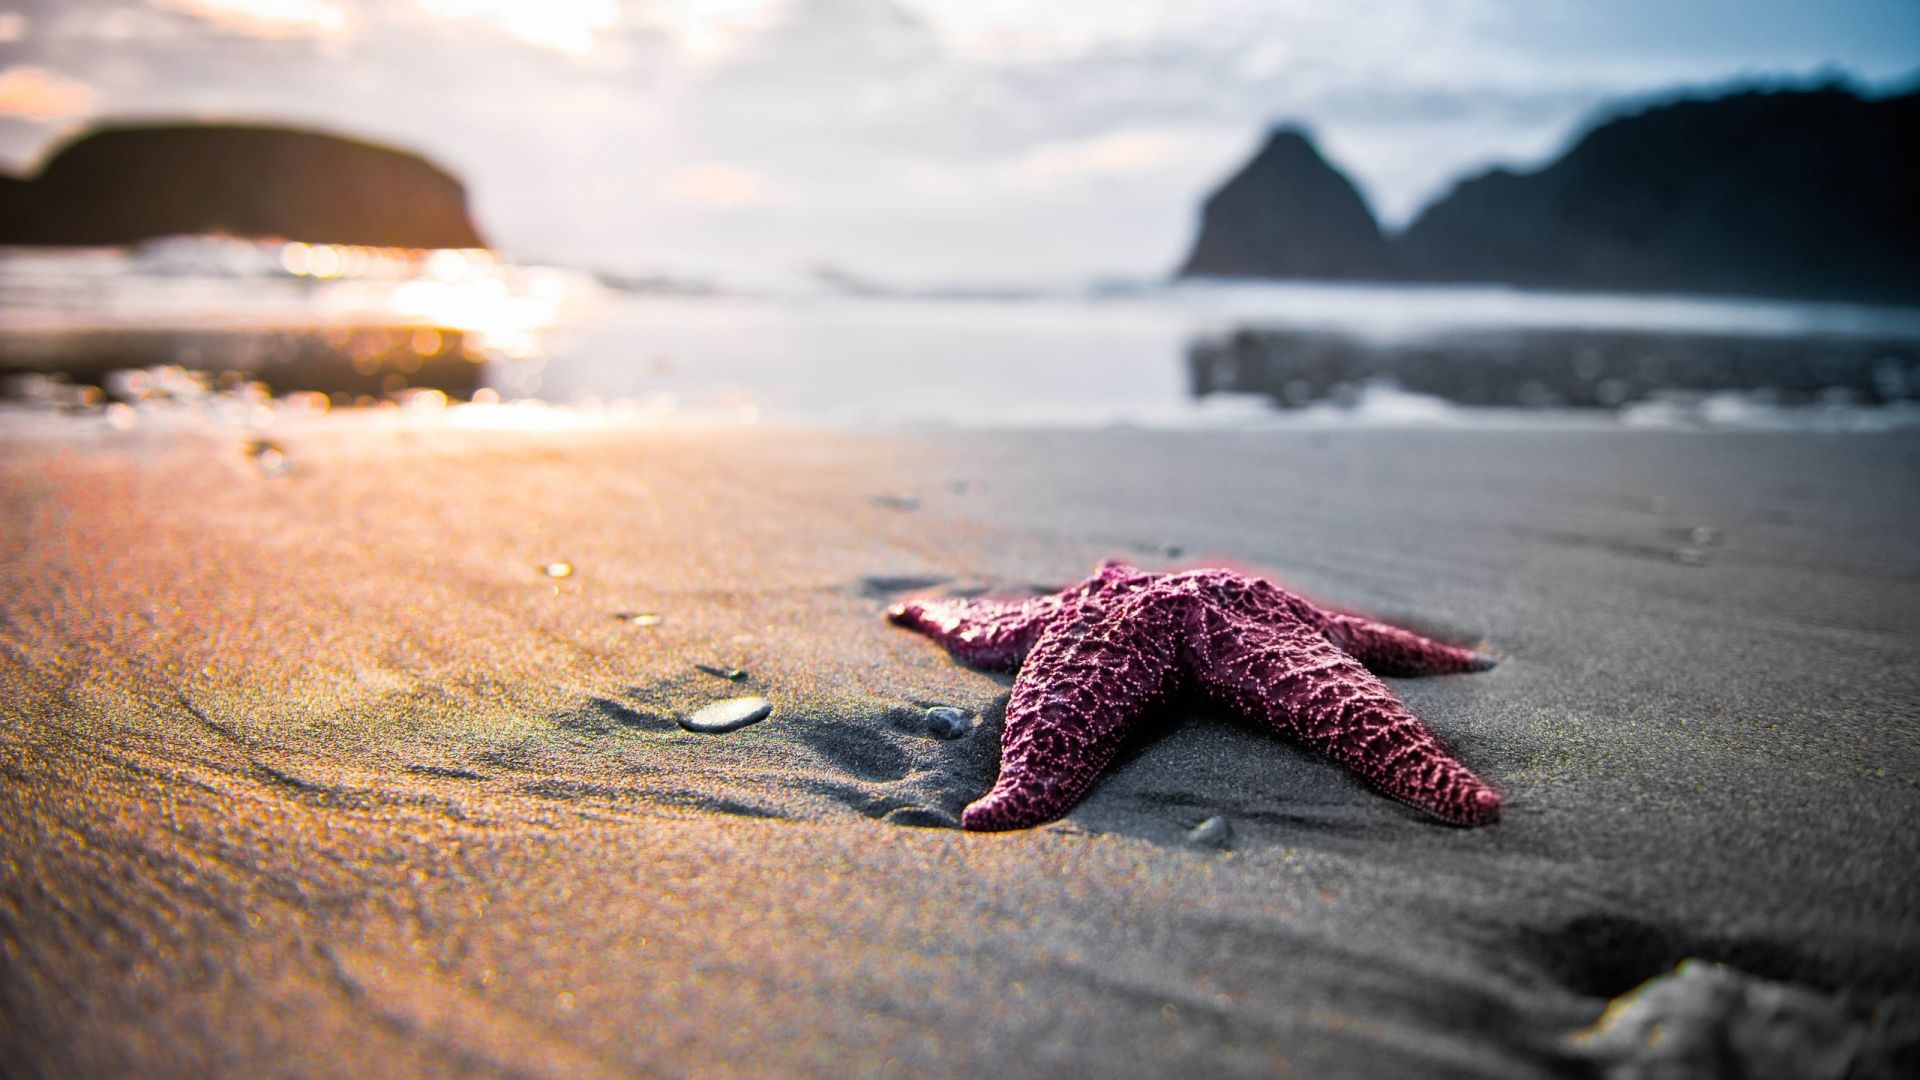 Wallpaper Star fish at beach blurred